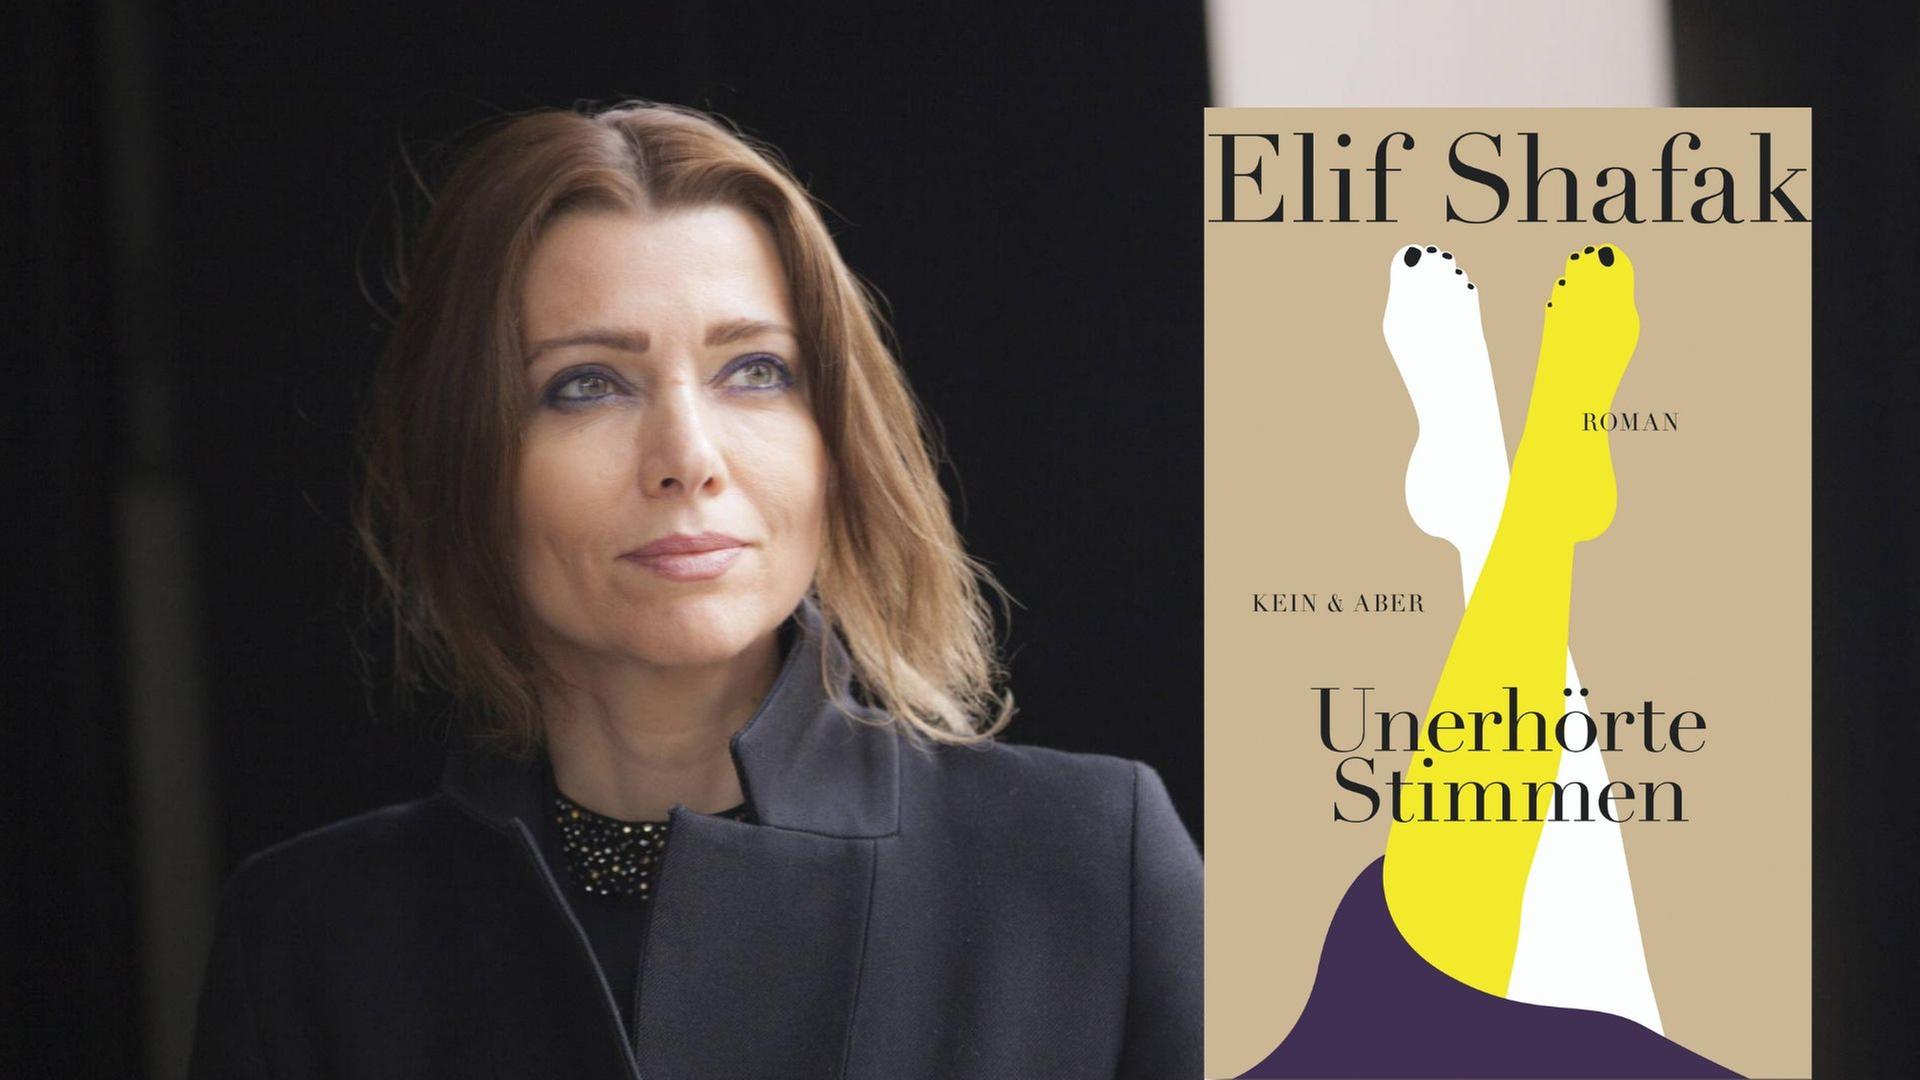 Buchcover: Elif Shafak: "Unerhörte Stimmen"